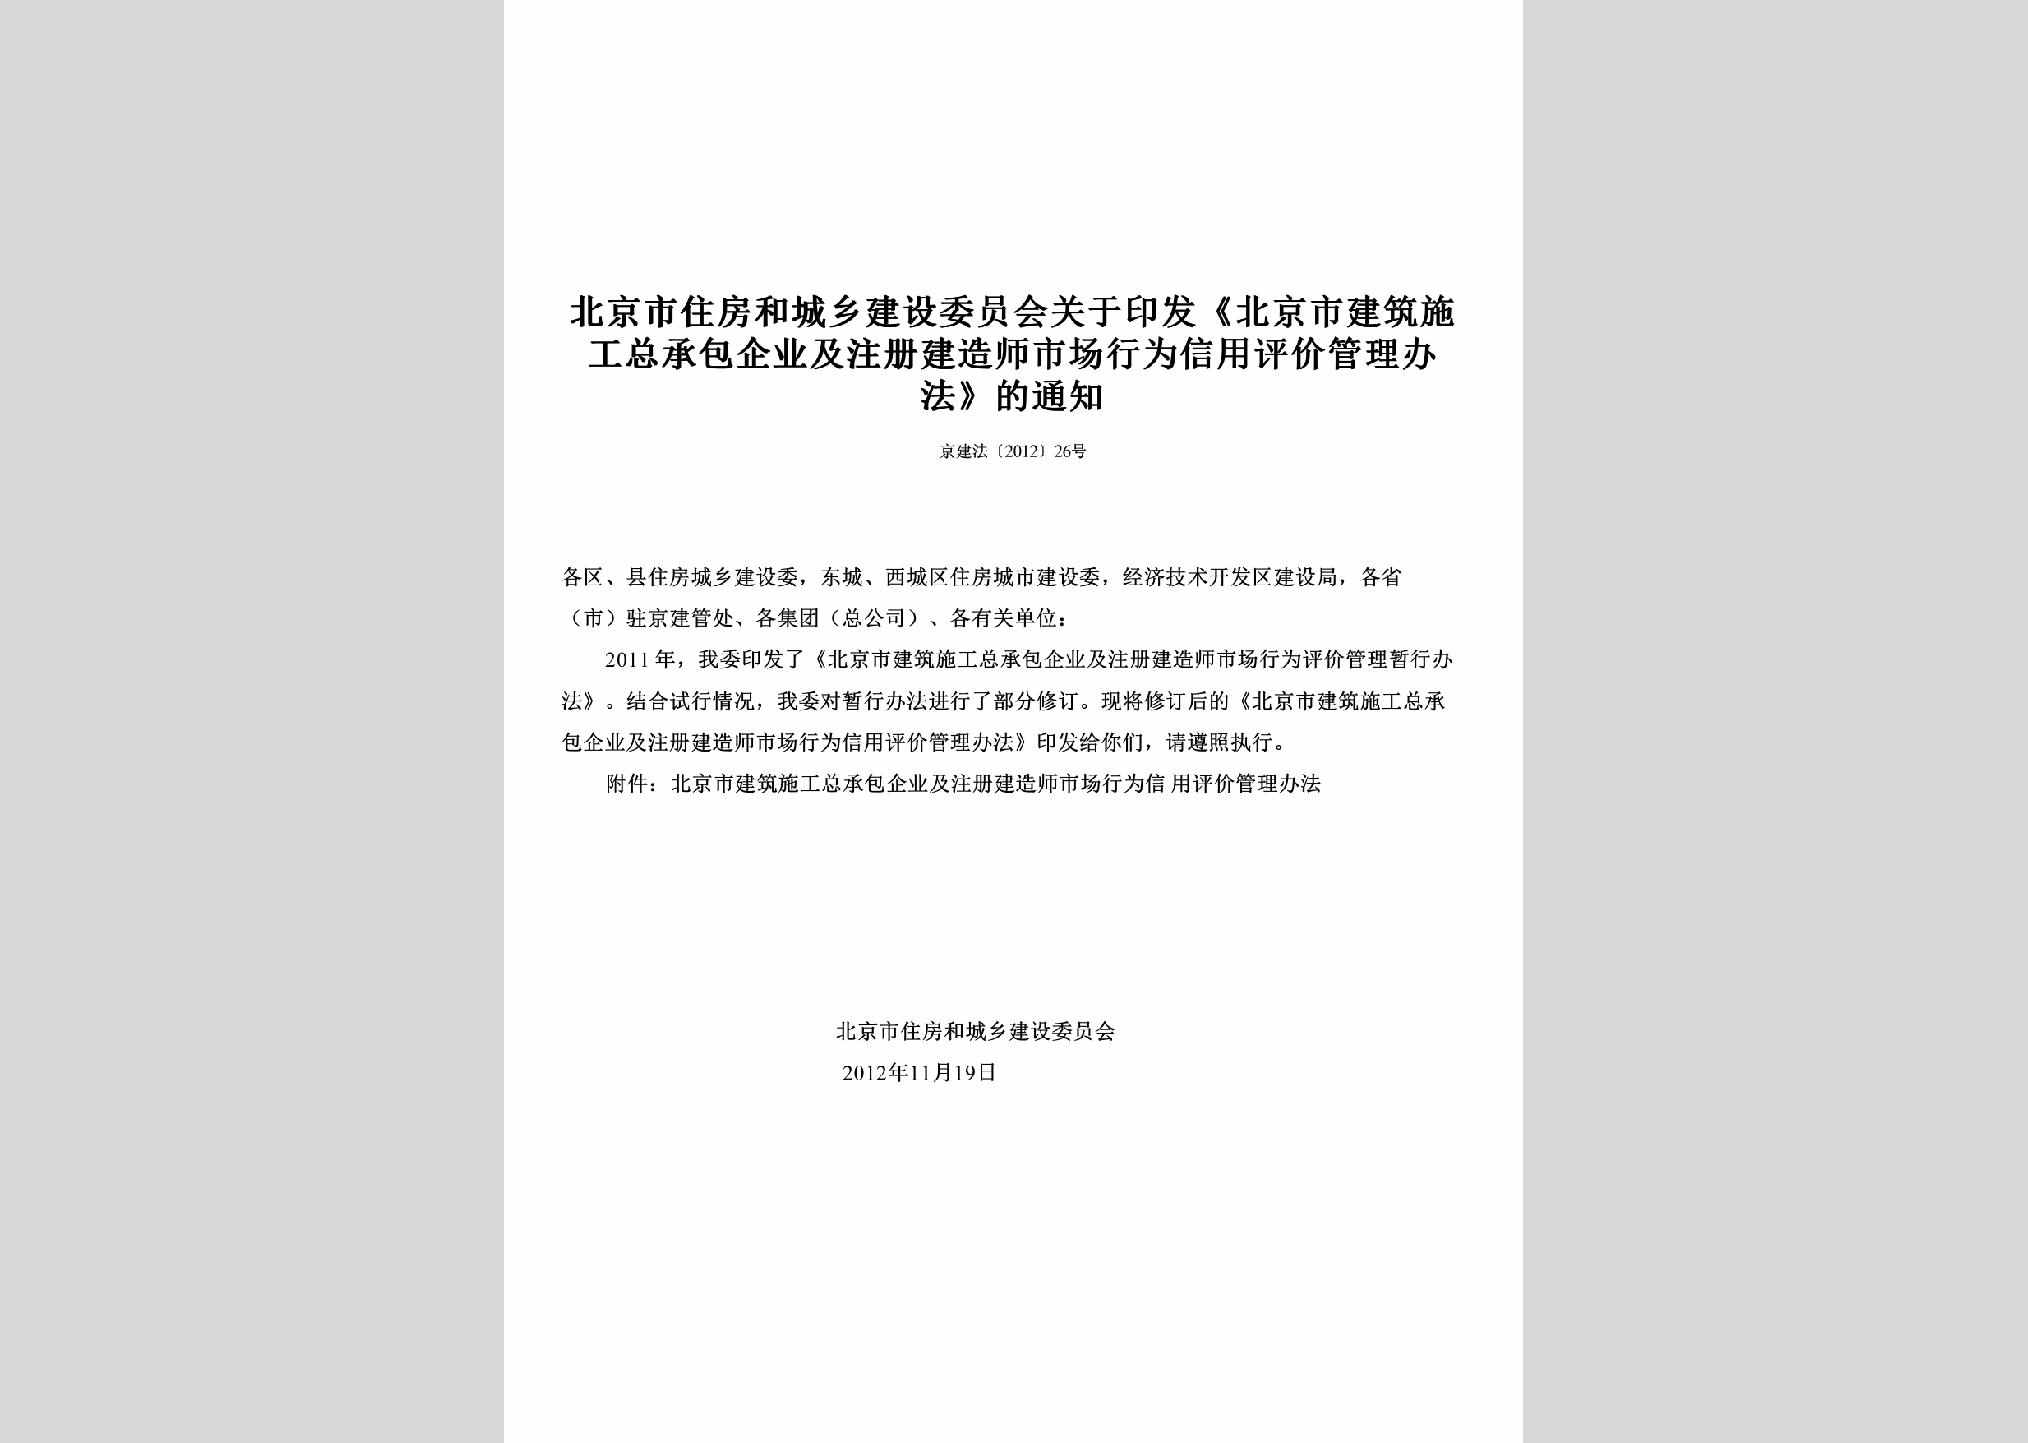 京建法[2012]26号：关于印发《北京市建筑施工总承包企业及注册建造师市场行为信用评价管理办法》的通知